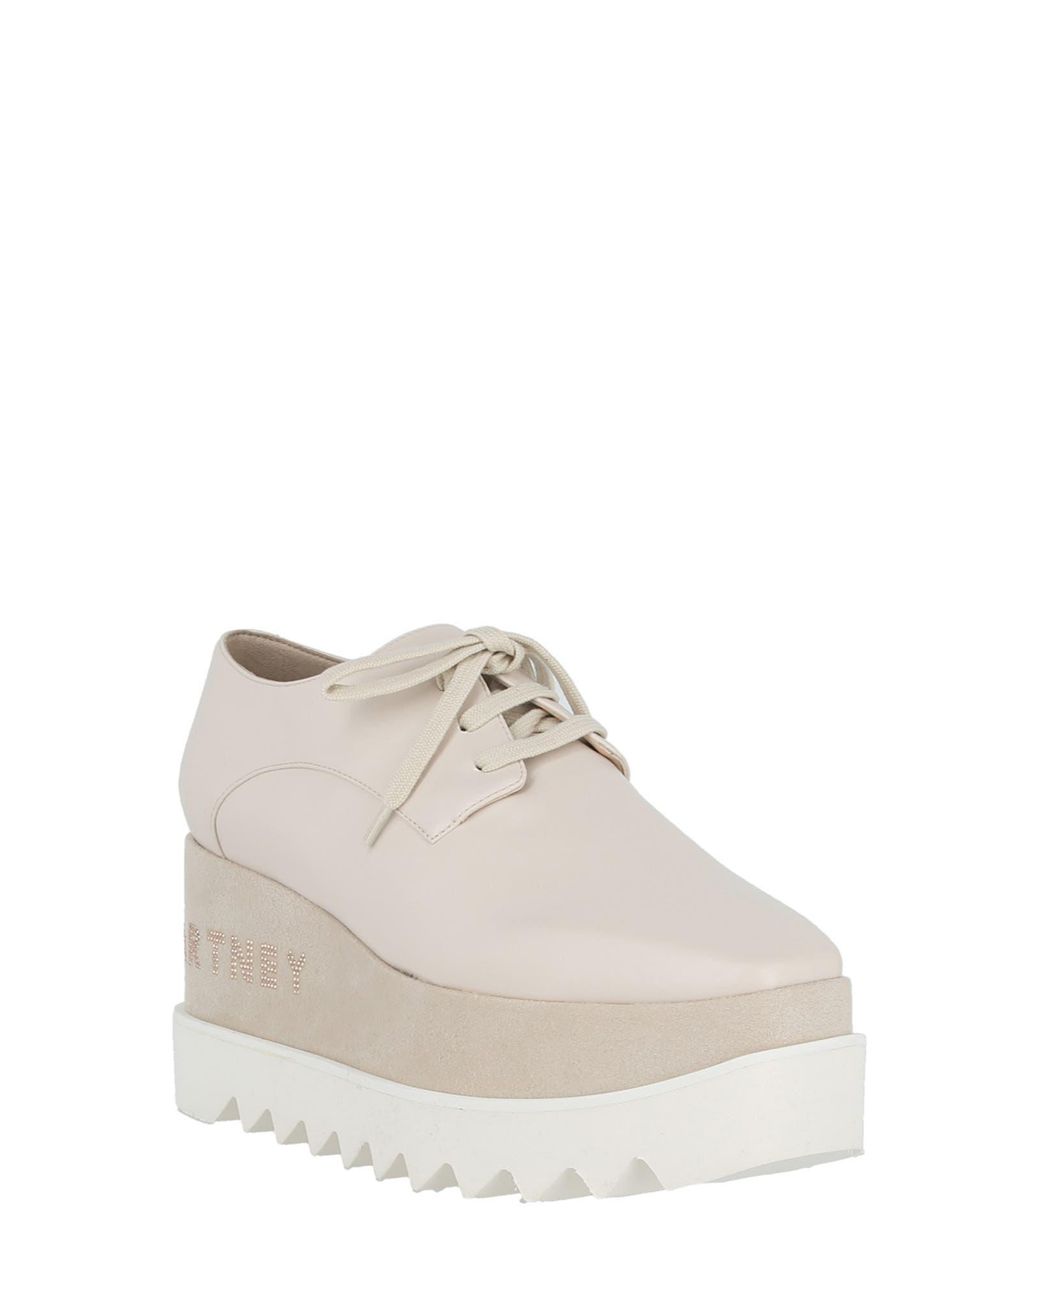 Stella McCartney Elyse Platform Wedge Sneaker in White | Lyst